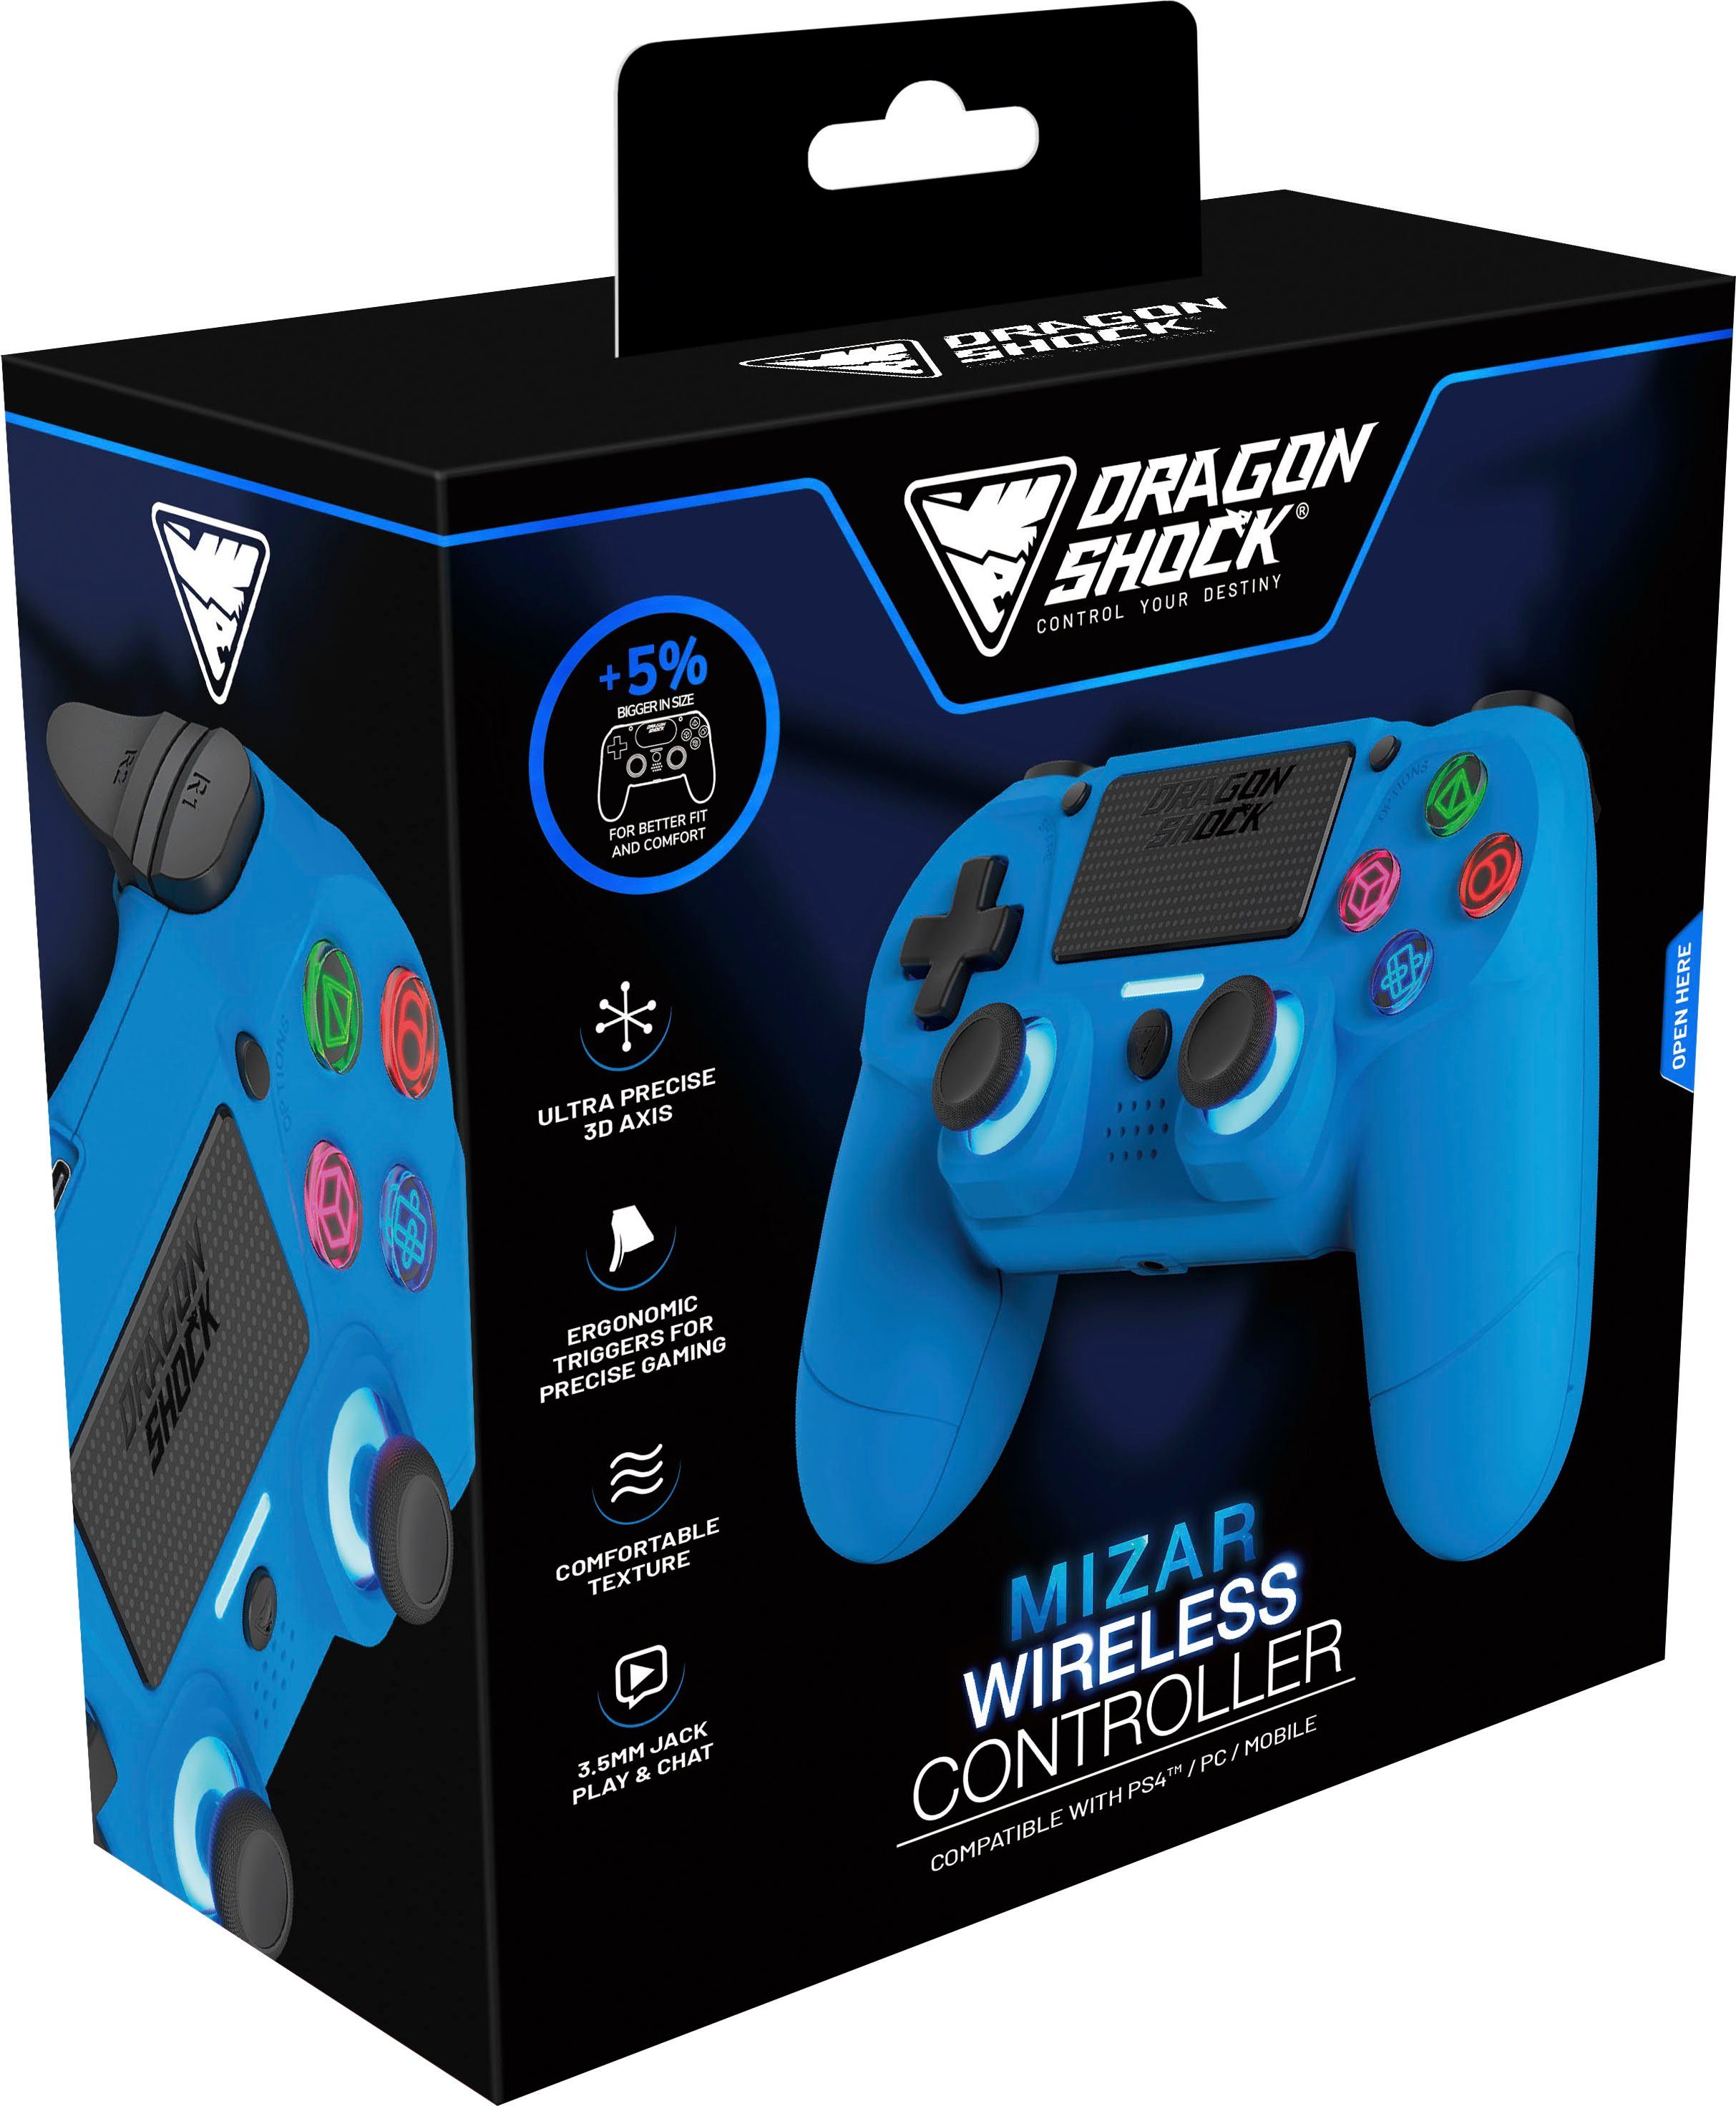 DRAGONSHOCK Controller Wireless PS4 für blau Mizar